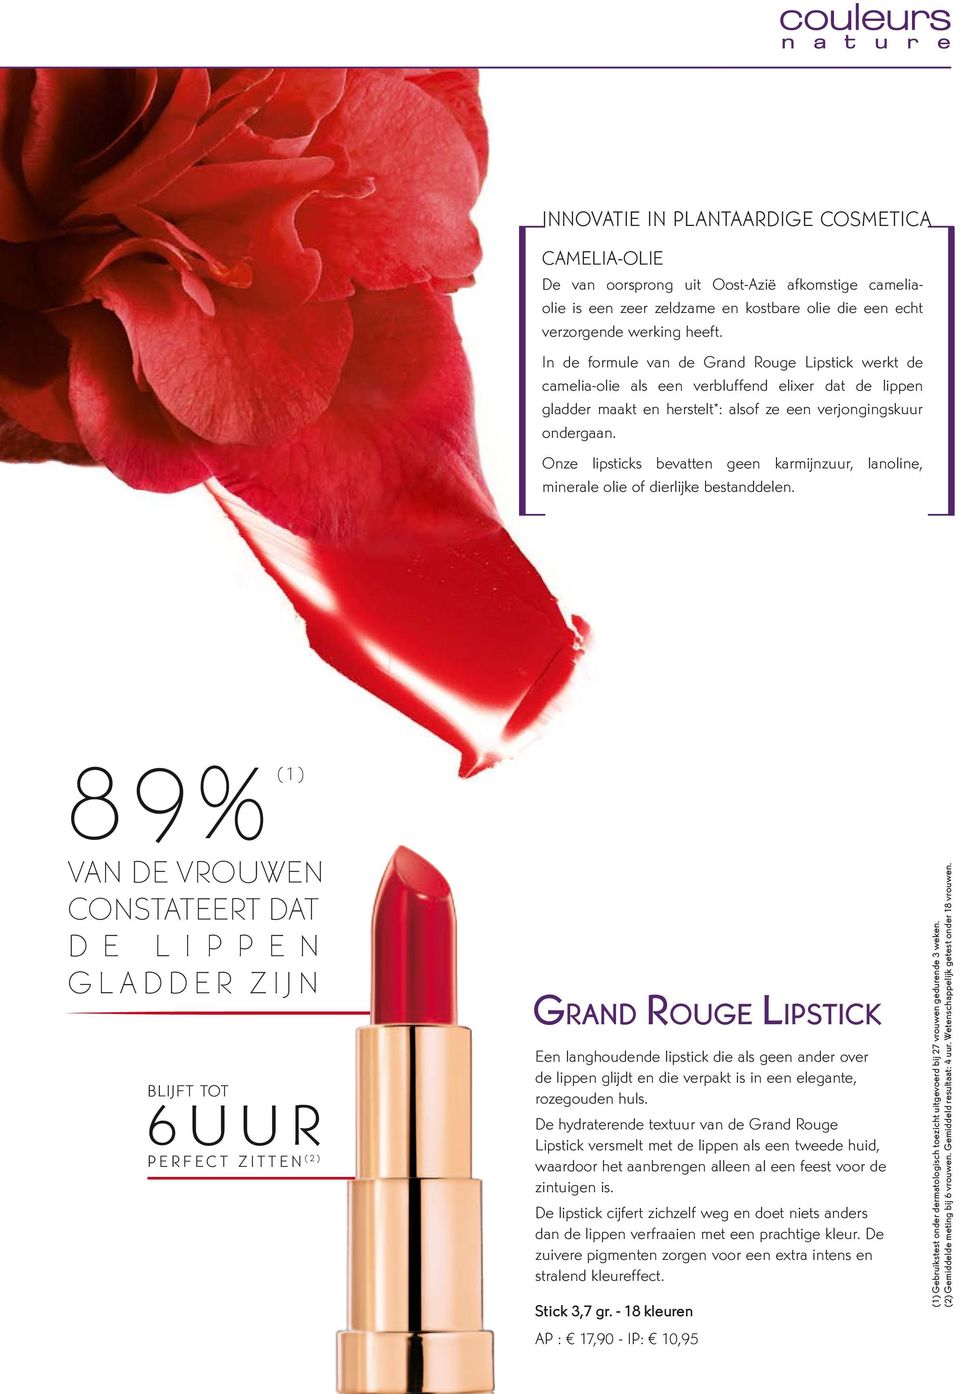 Onze lipsticks bevatten geen karmijnzuur, lanoline, minerale olie of dierlijke bestanddelen.